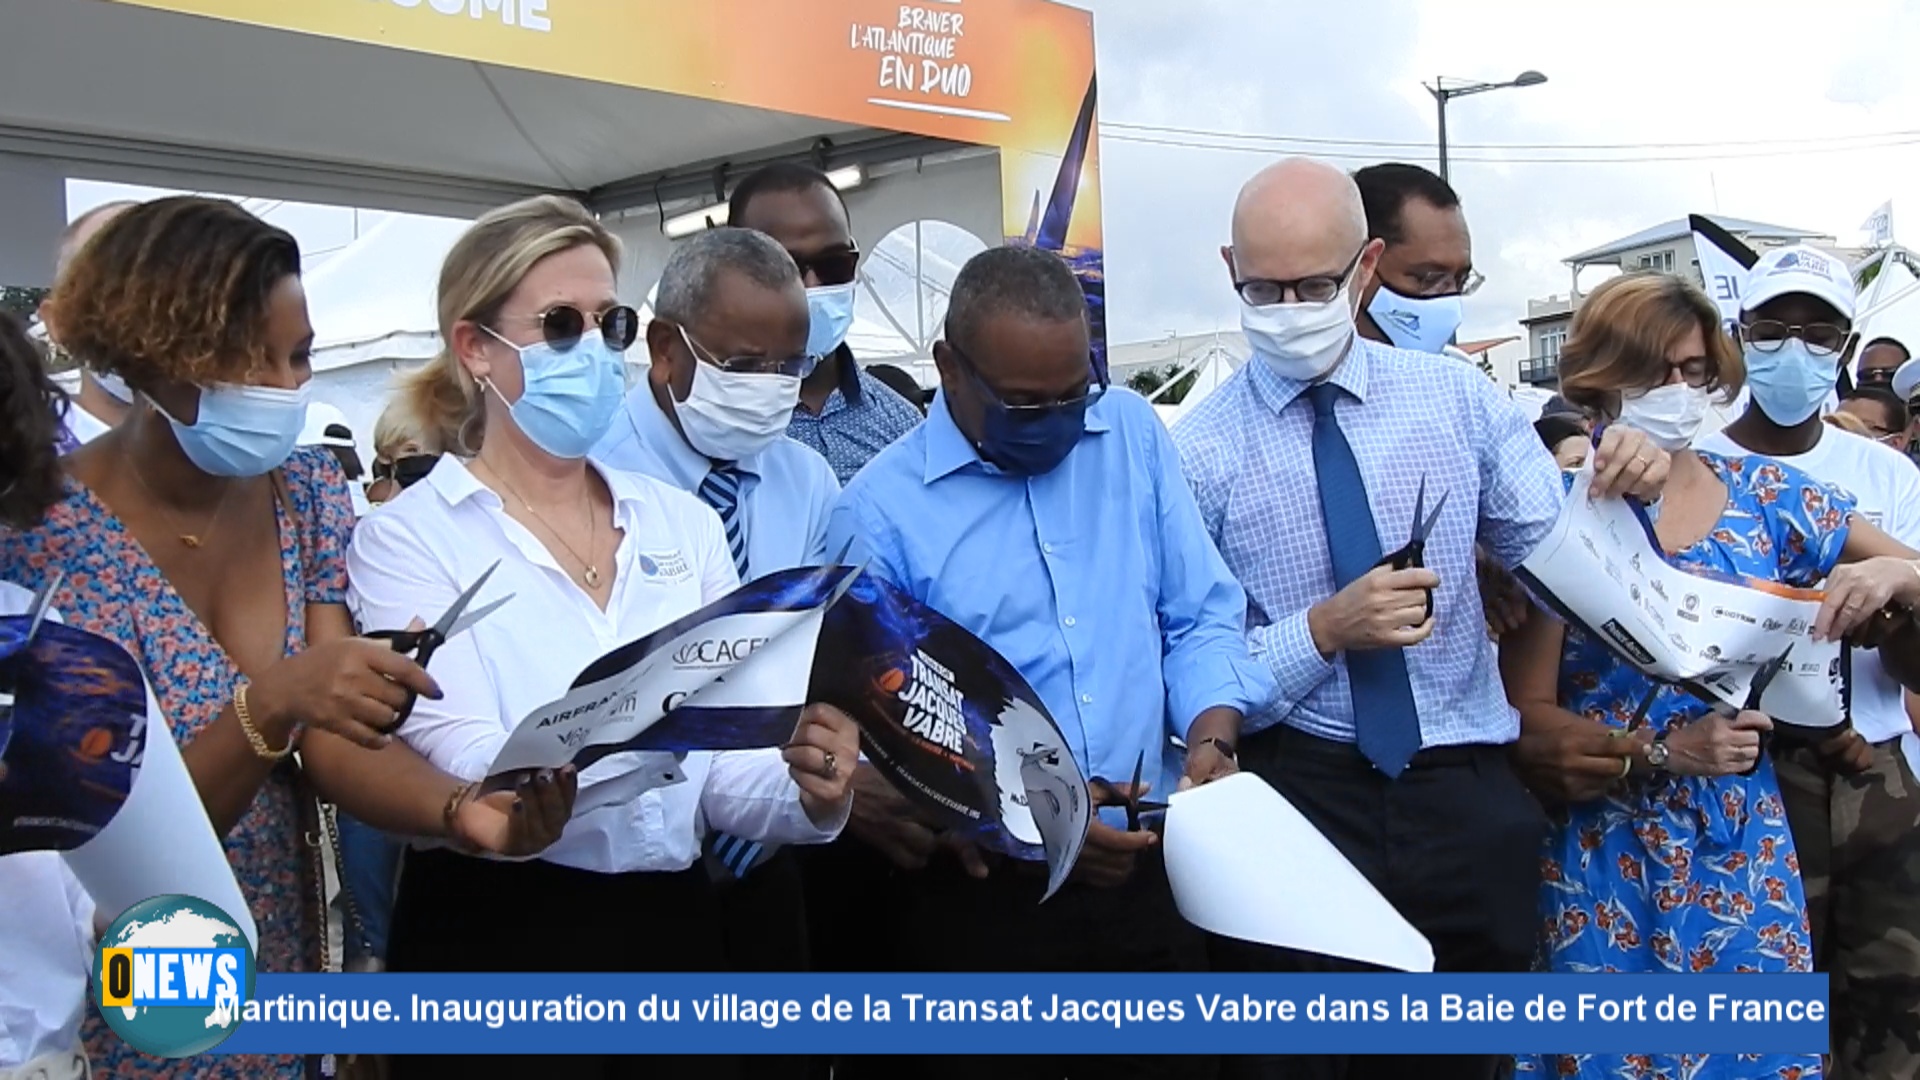 [Vidéo] Martinique. Inauguration du village de la Transat Jacques Vabre dans la Baie de Fort de France